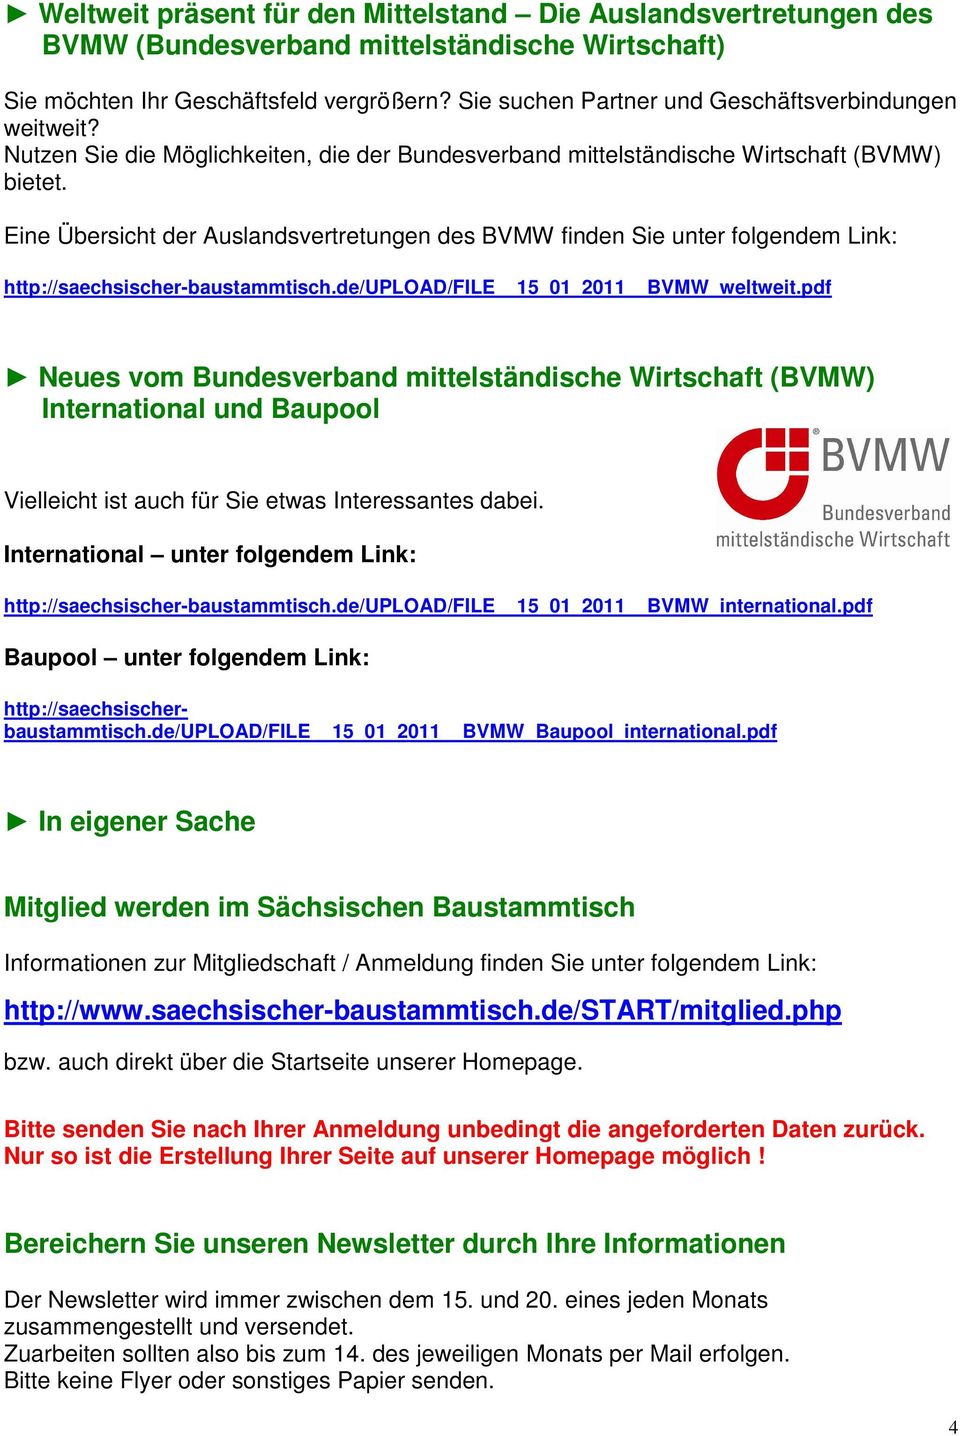 Eine Übersicht der Auslandsvertretungen des BVMW finden Sie unter folgendem Link: http://saechsischer-baustammtisch.de/upload/file 15_01_2011 BVMW_weltweit.